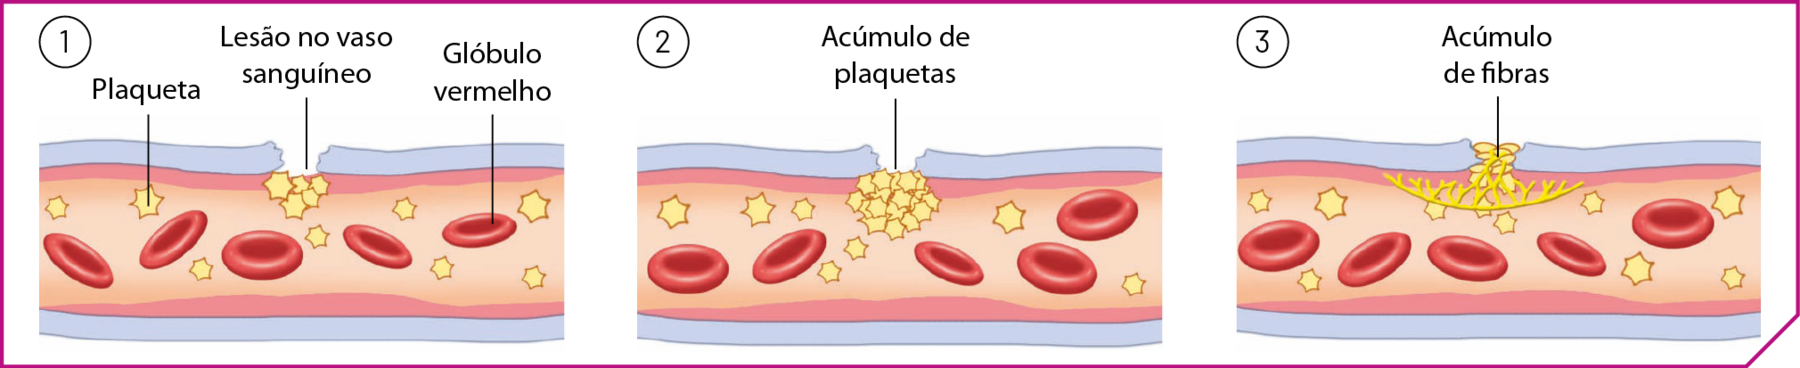 Esquema. Tubo com estruturas discoidais vermelhas representando os glóbulos vermelhos e estruturas amarelas em forma de estrelas representando as plaquetas. Em 1: há uma fissura na parte superior do tubo: Lesão no vaso sanguíneo. Em 2: há várias plaquetas acumuladas na fissura: Acúmulo de plaquetas. Em 3: Há fios em amarelo fechando a fissura: Acúmulo de fibras.